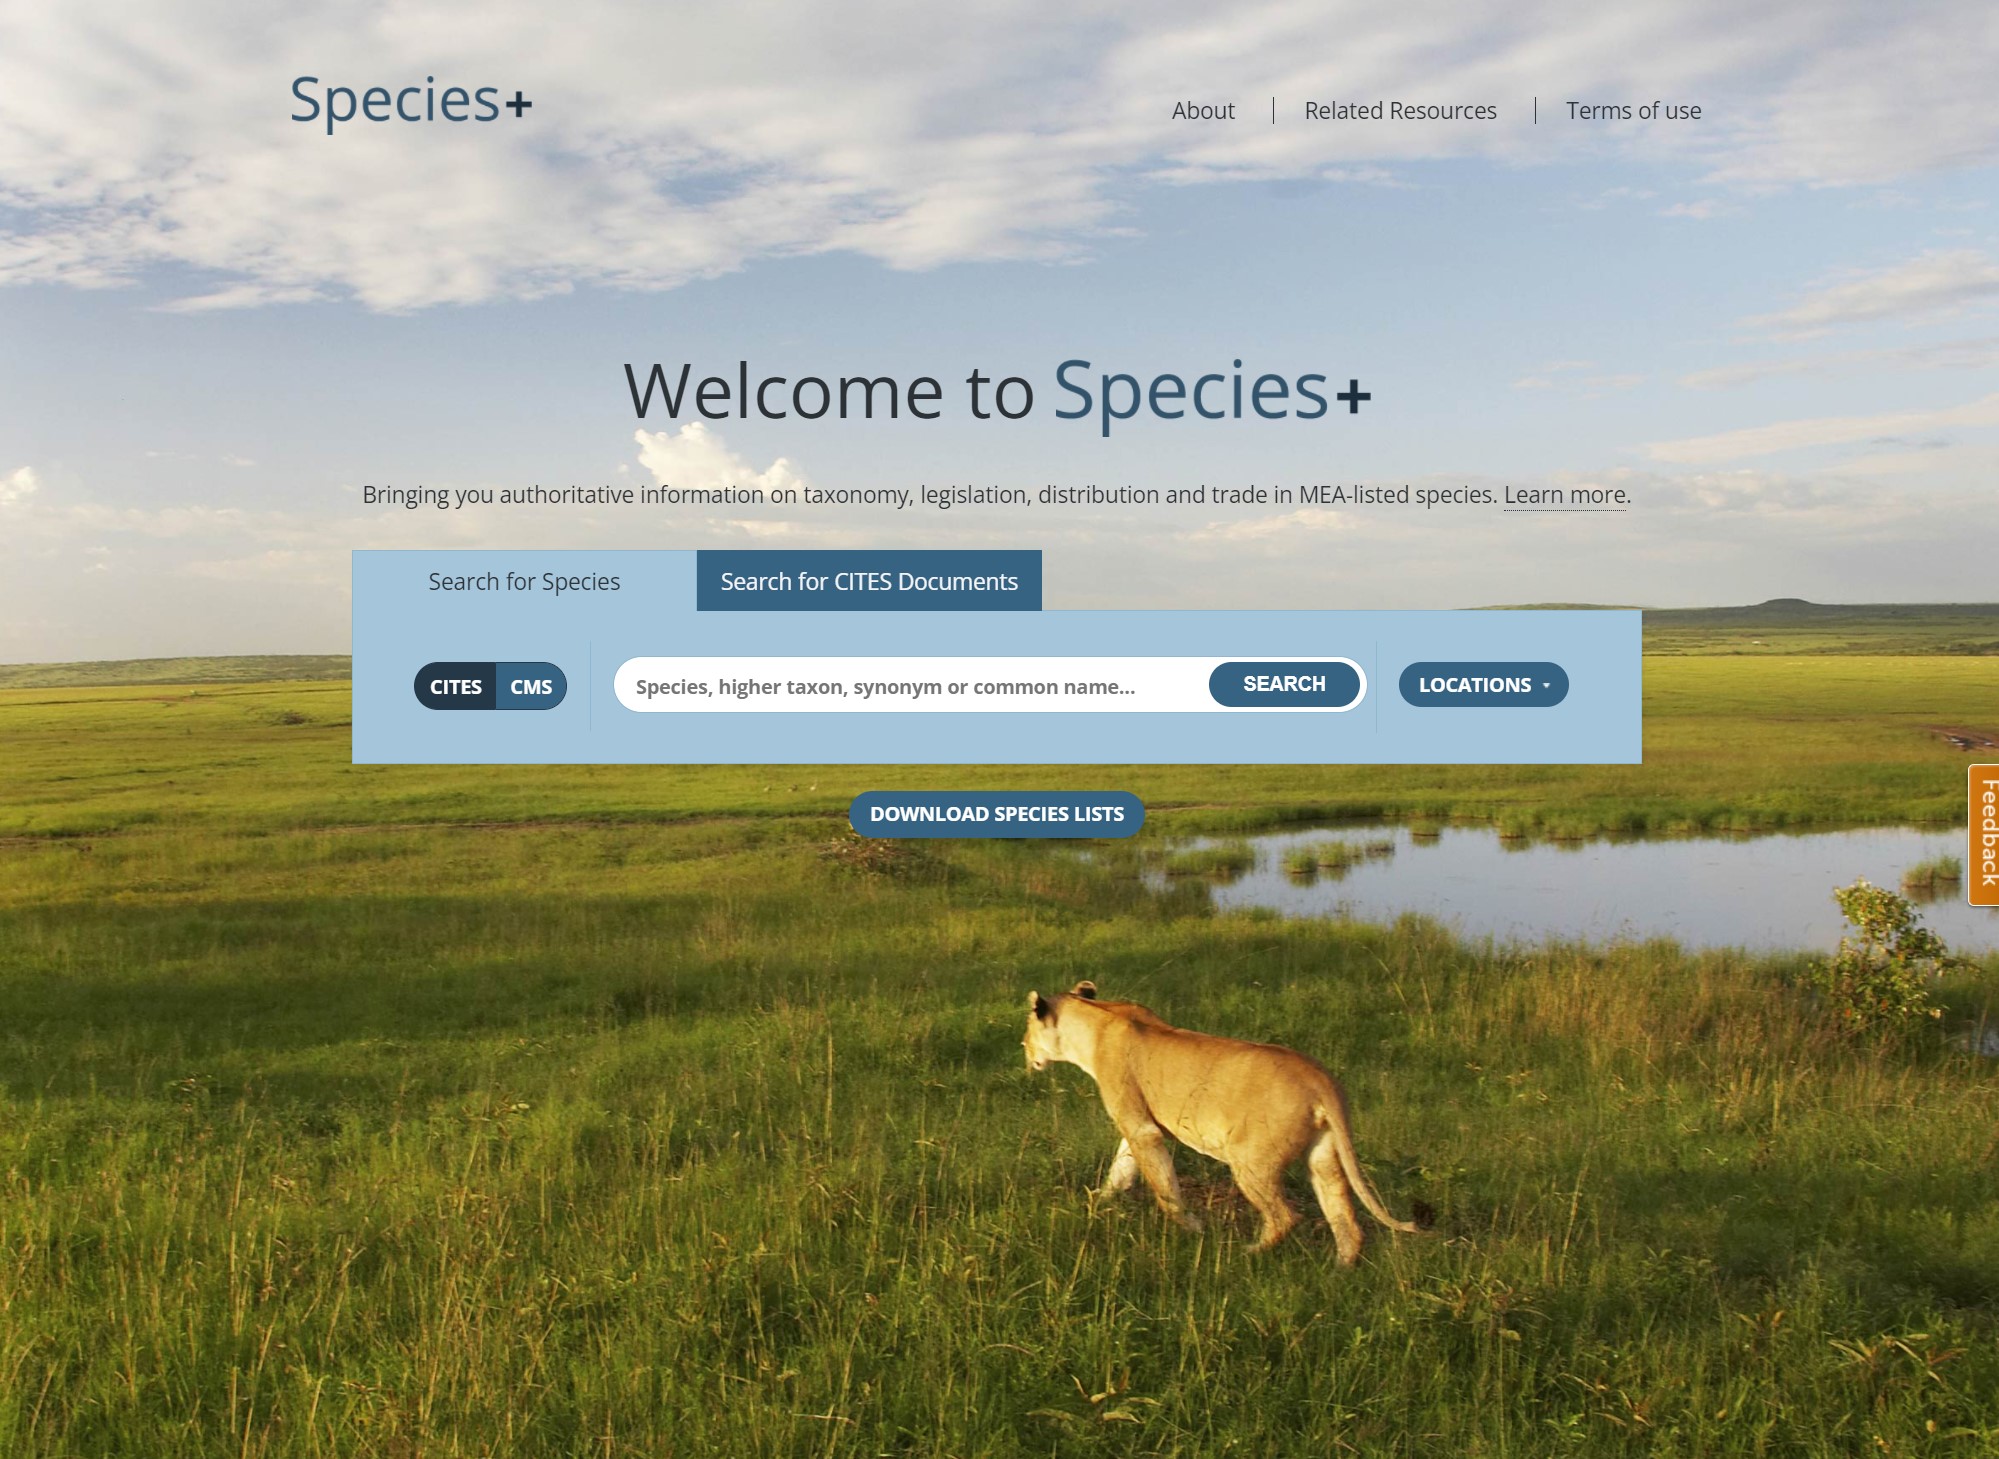 Species+